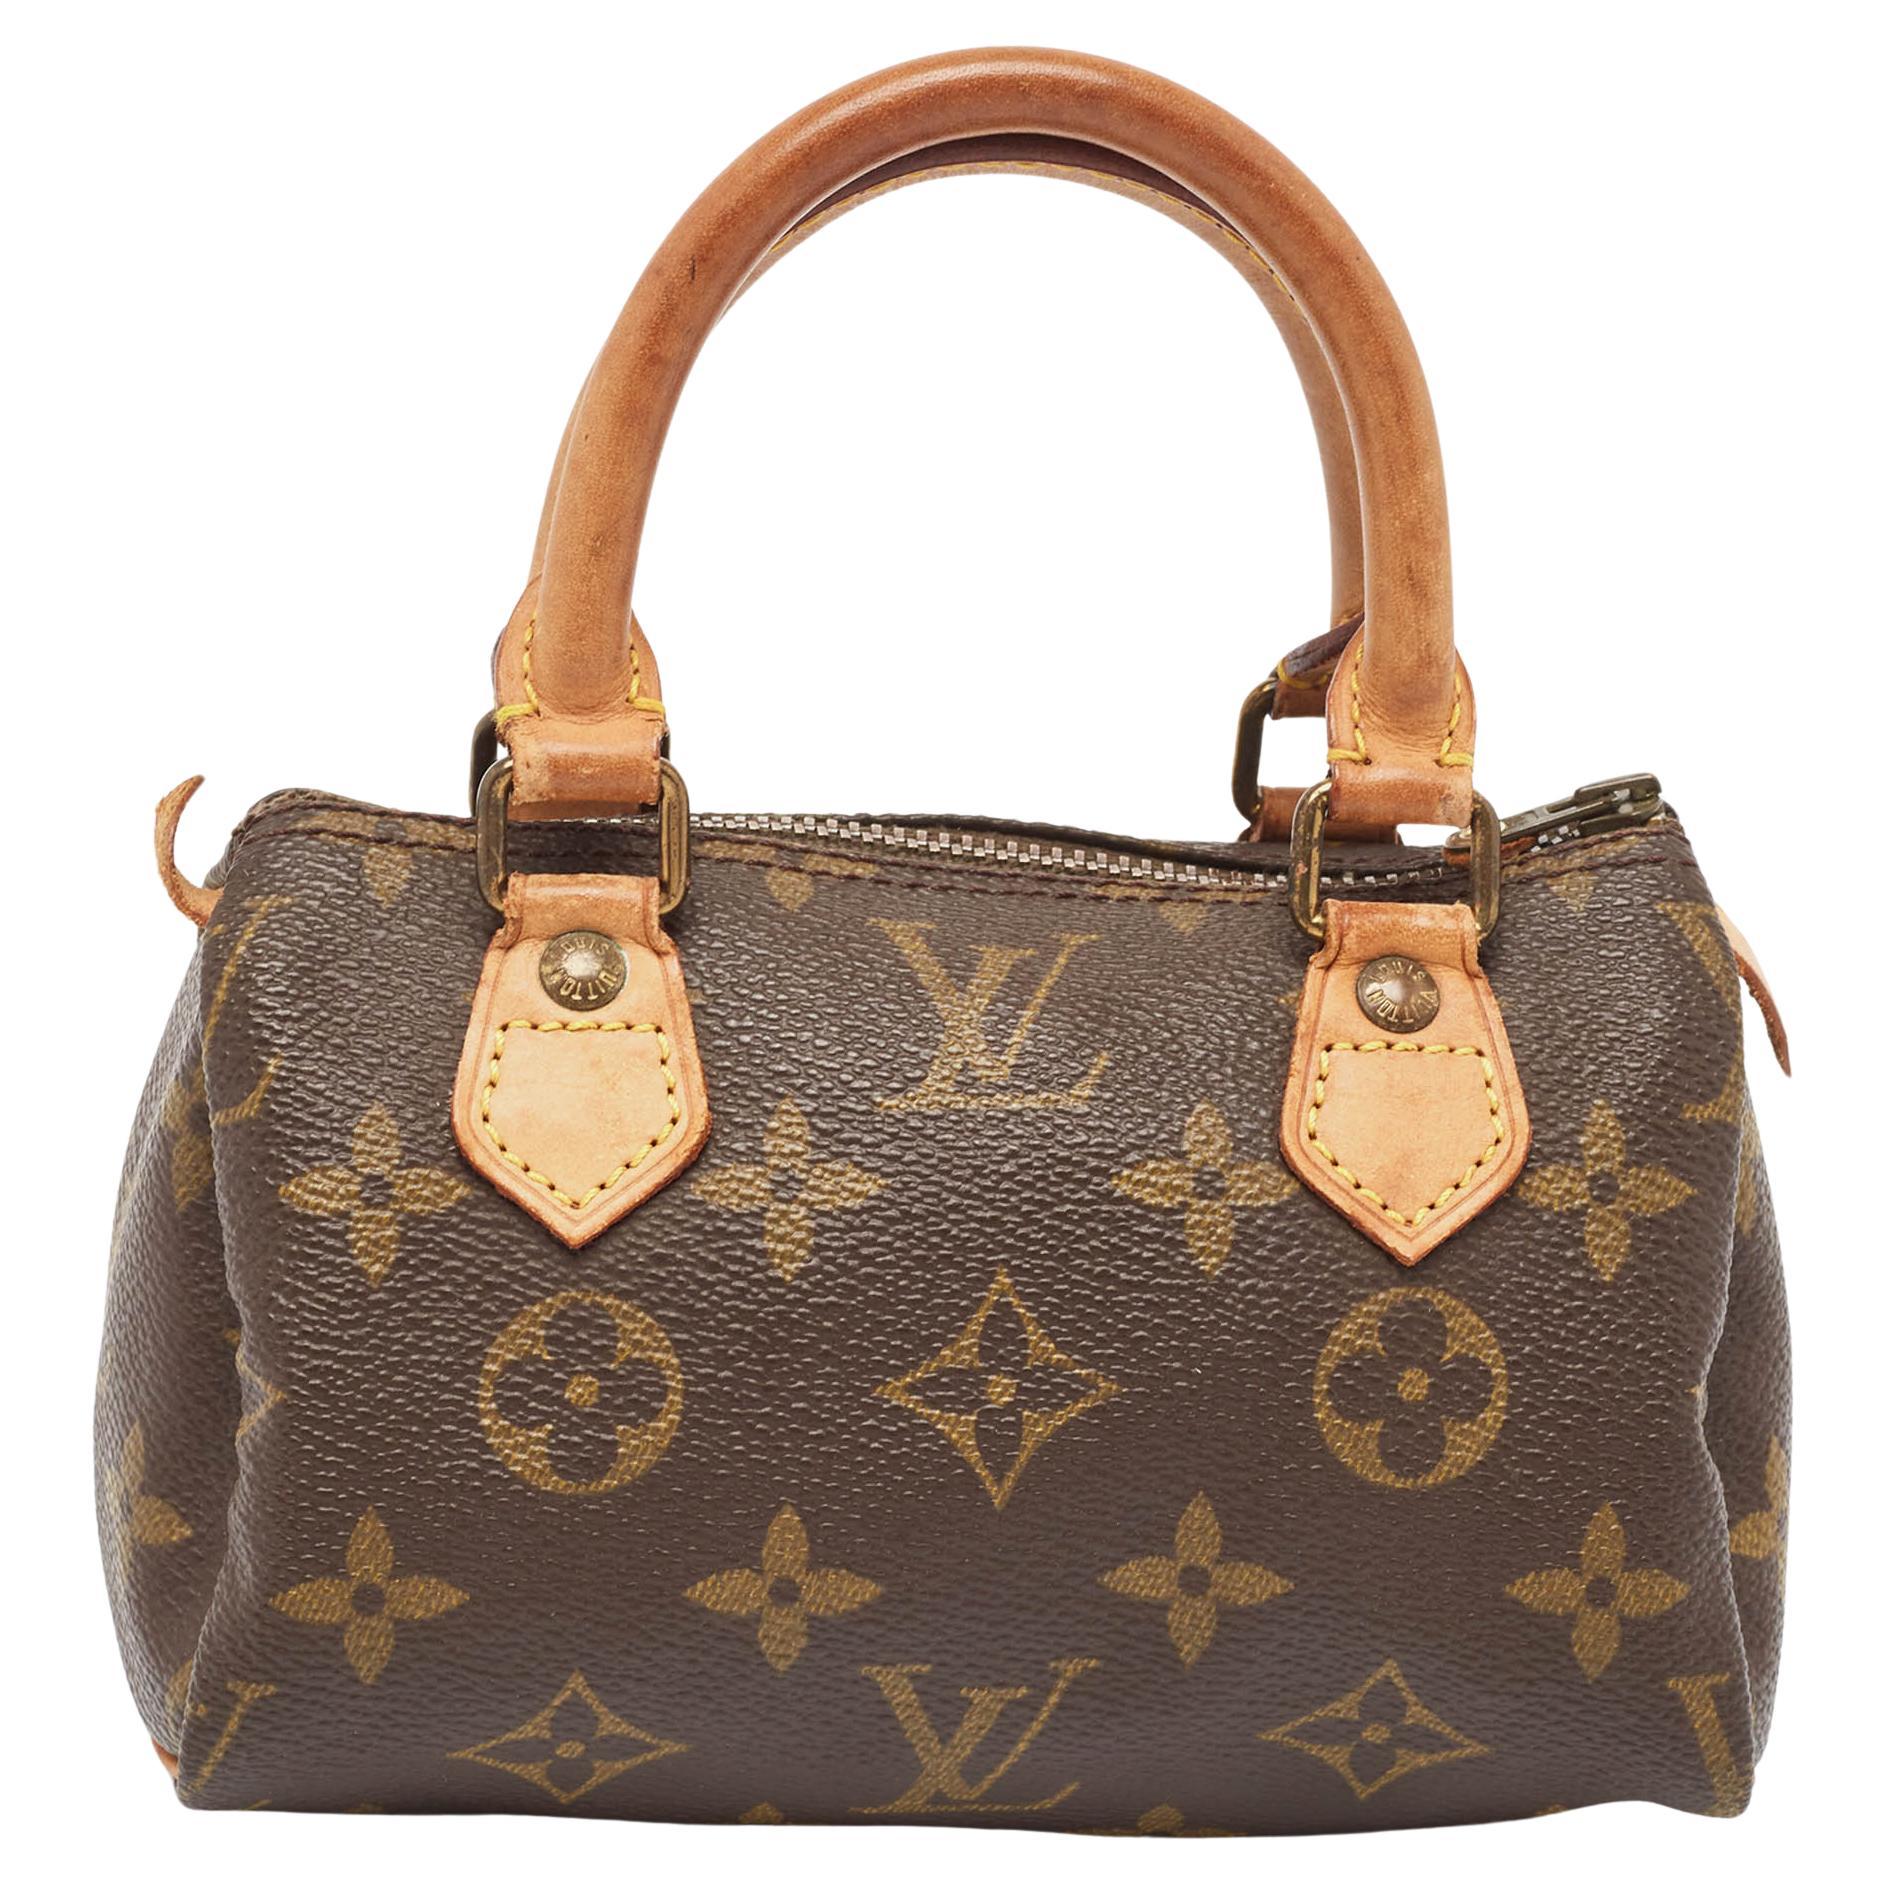 What is a Speedy Louis Vuitton bag?